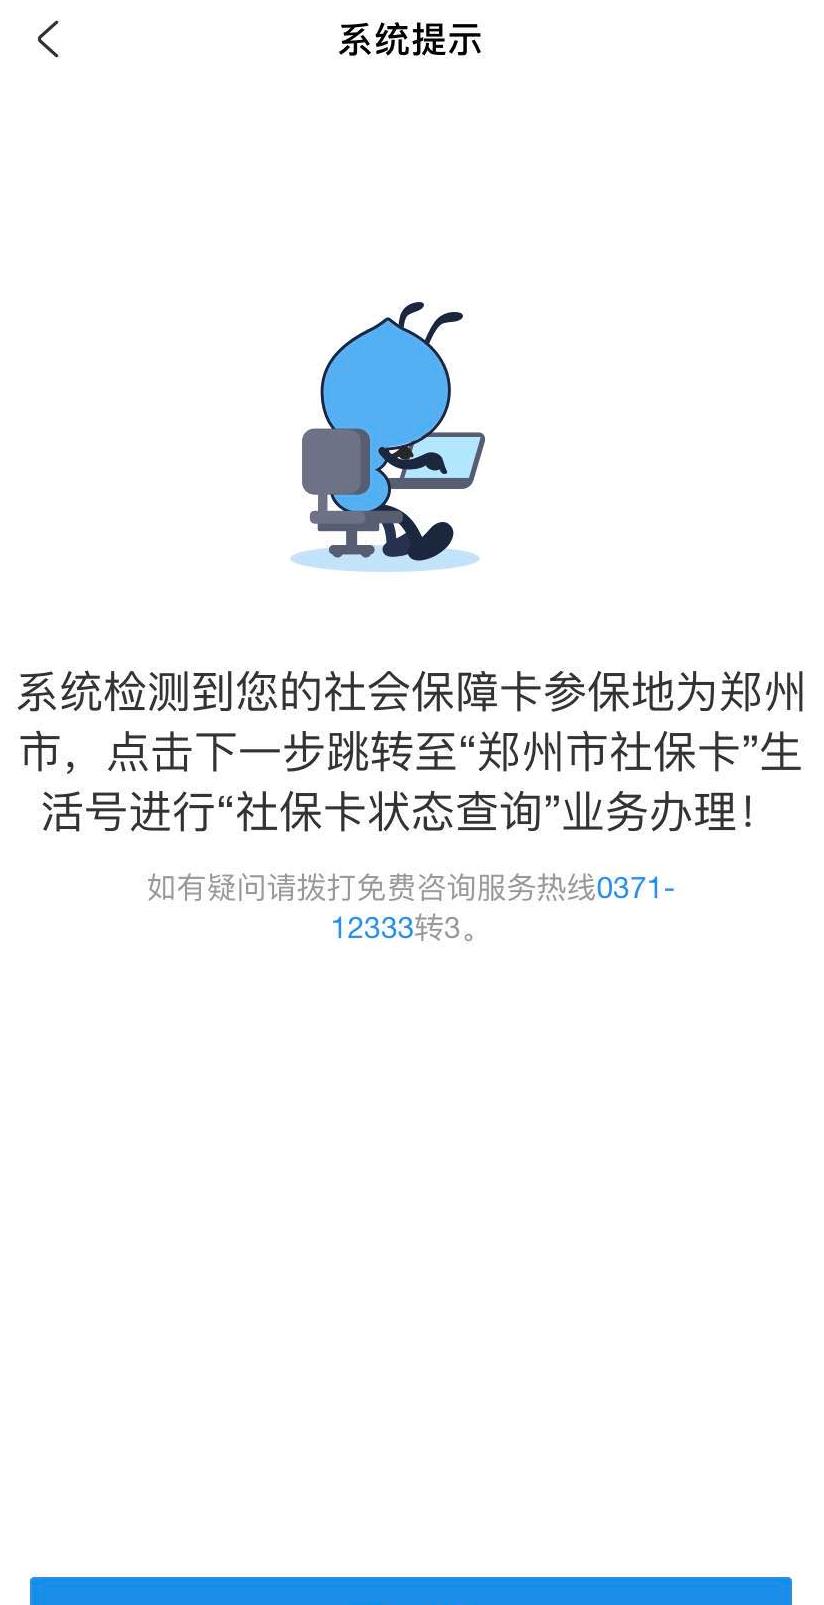 郑州社保企业客户端郑州市社保企业客户端软件下载